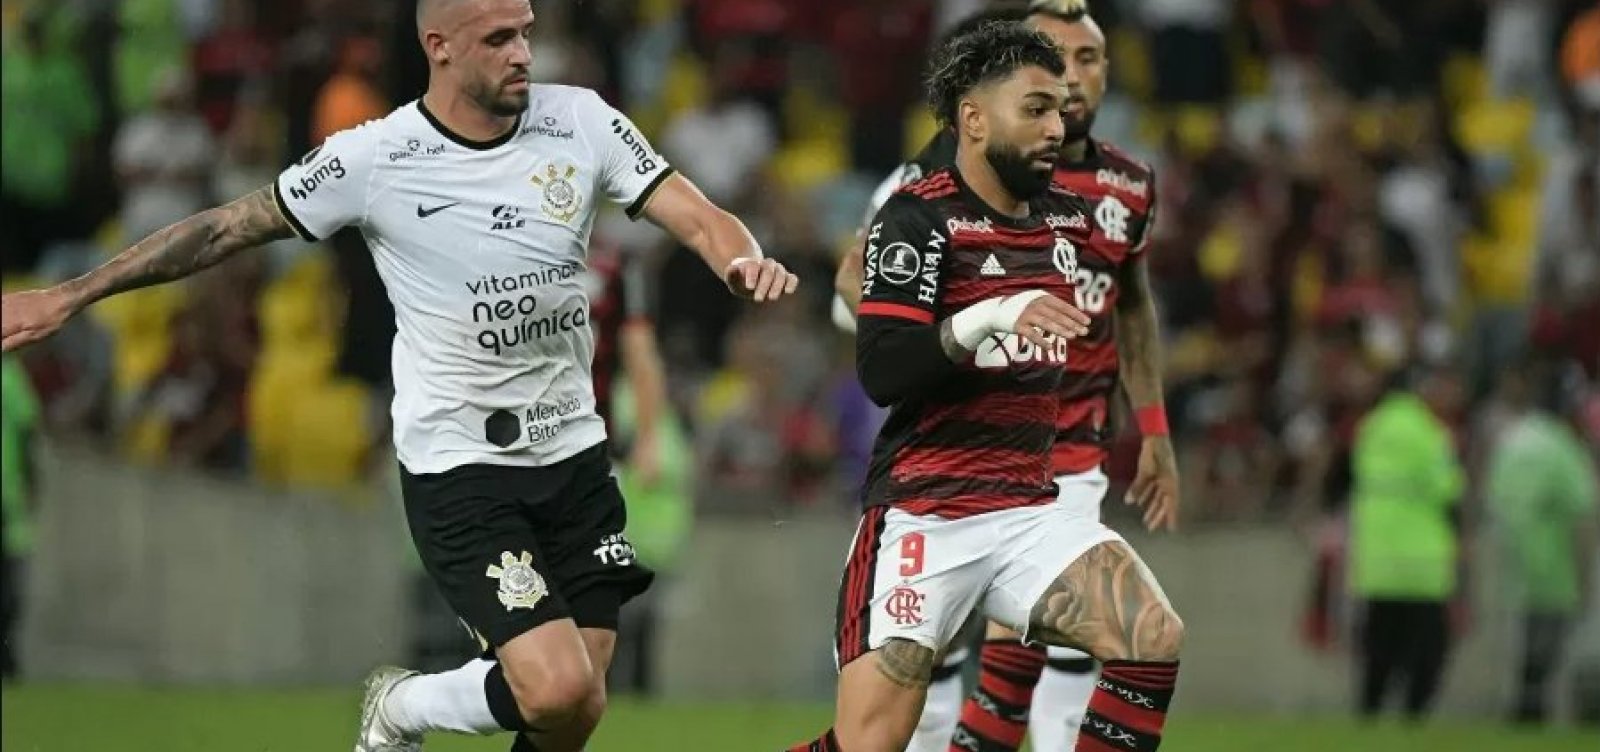 Copa do Brasil: após 0 a 0, Fla e Corinthians decidirão título no RJ